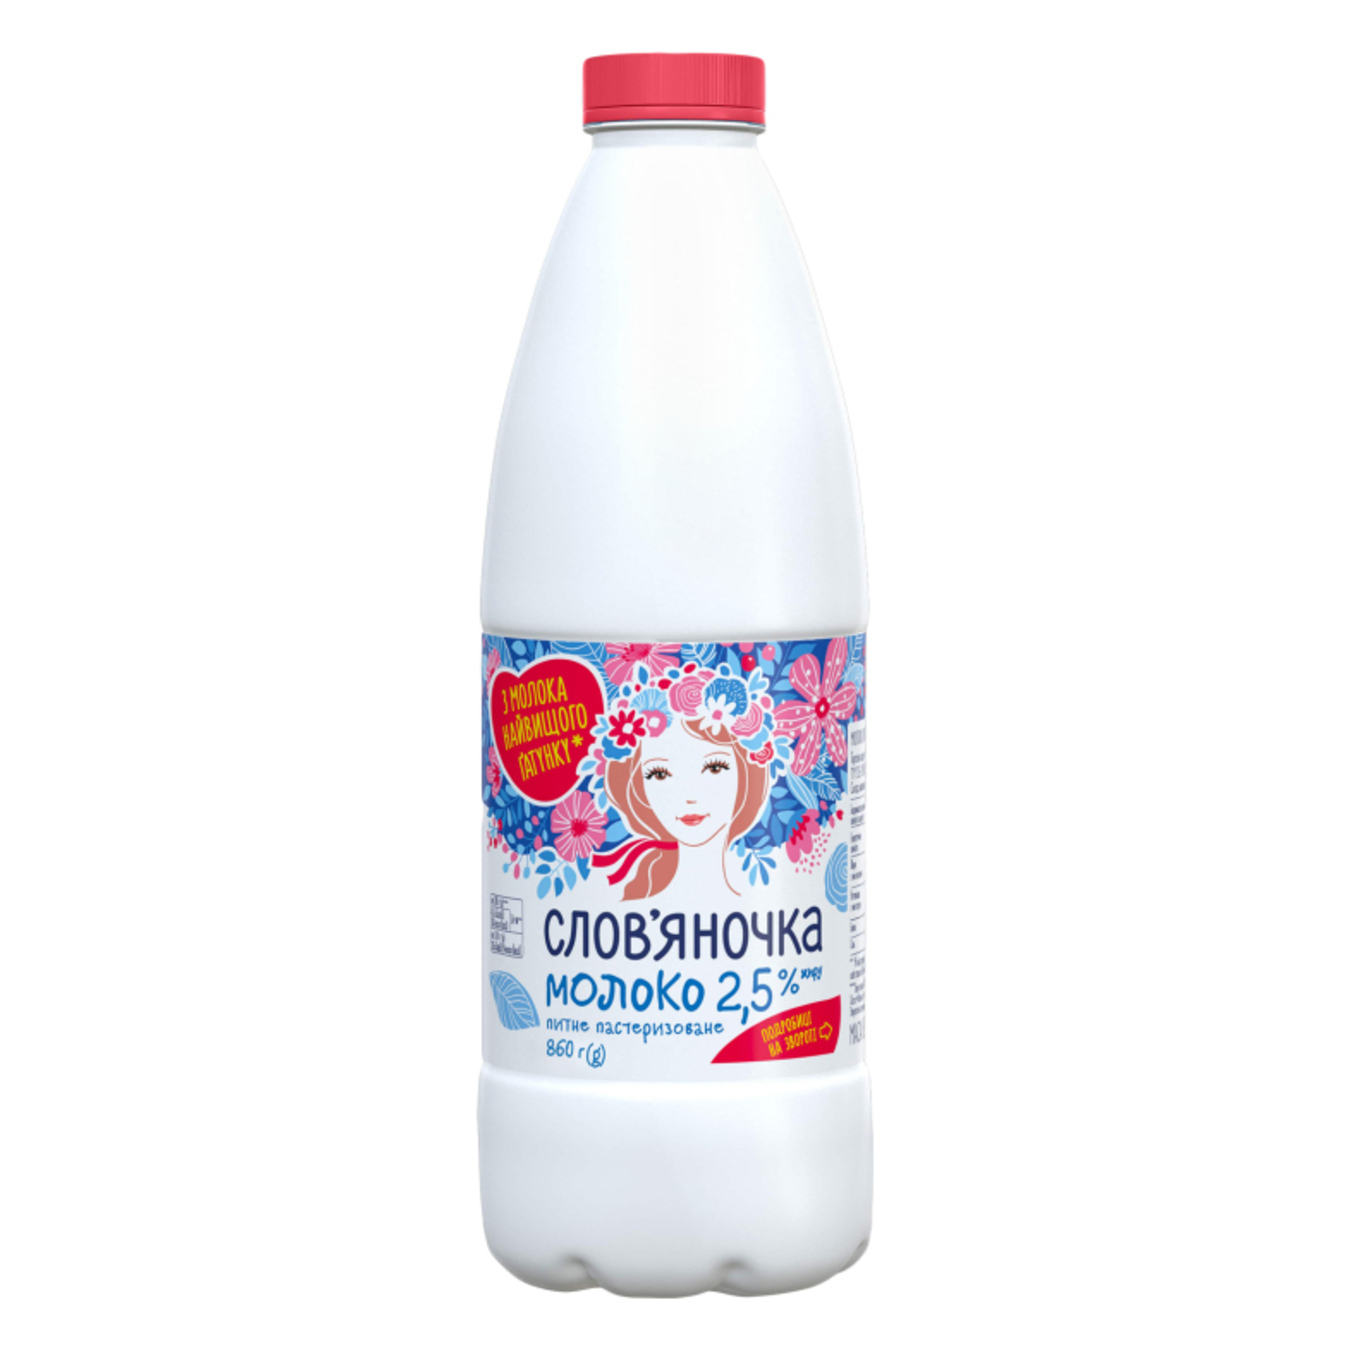 Молоко Слов'яночка 2,5% питне пастеризоване пляшка 860г